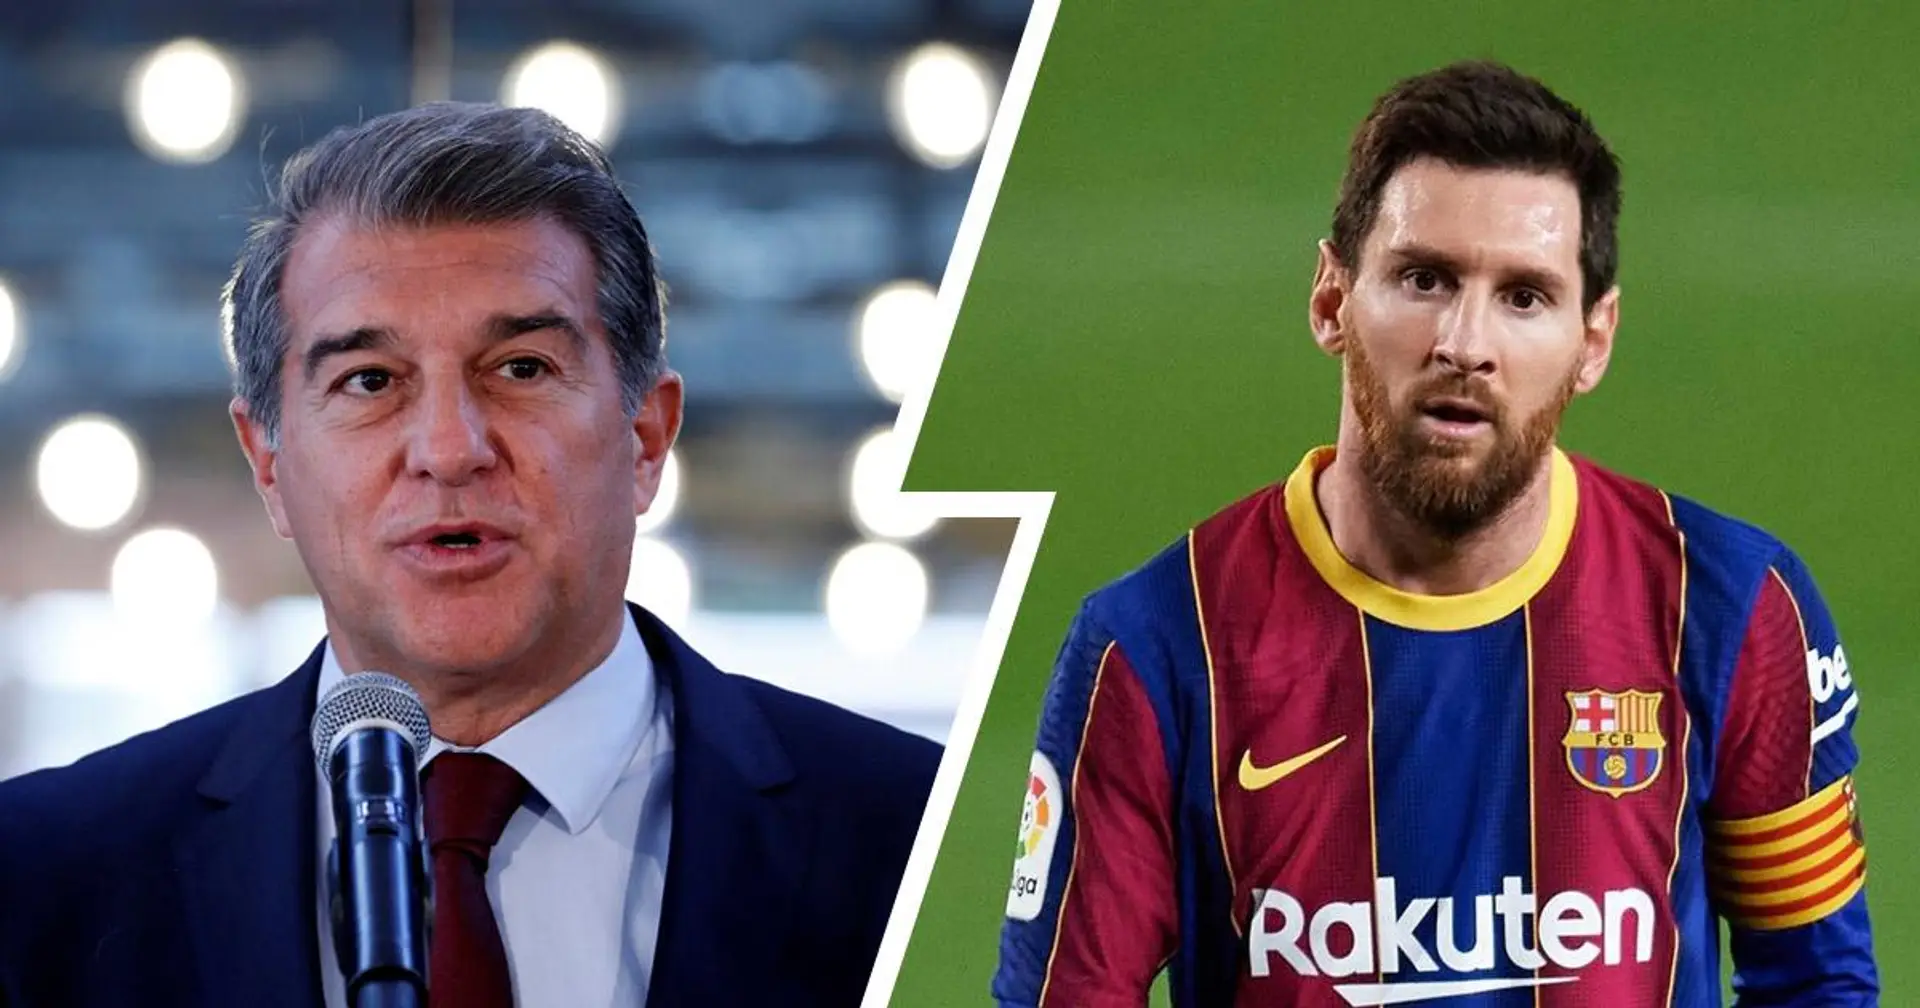 La finalización del contrato de Messi no preocupa a Joan Laporta - explicado en un minuto